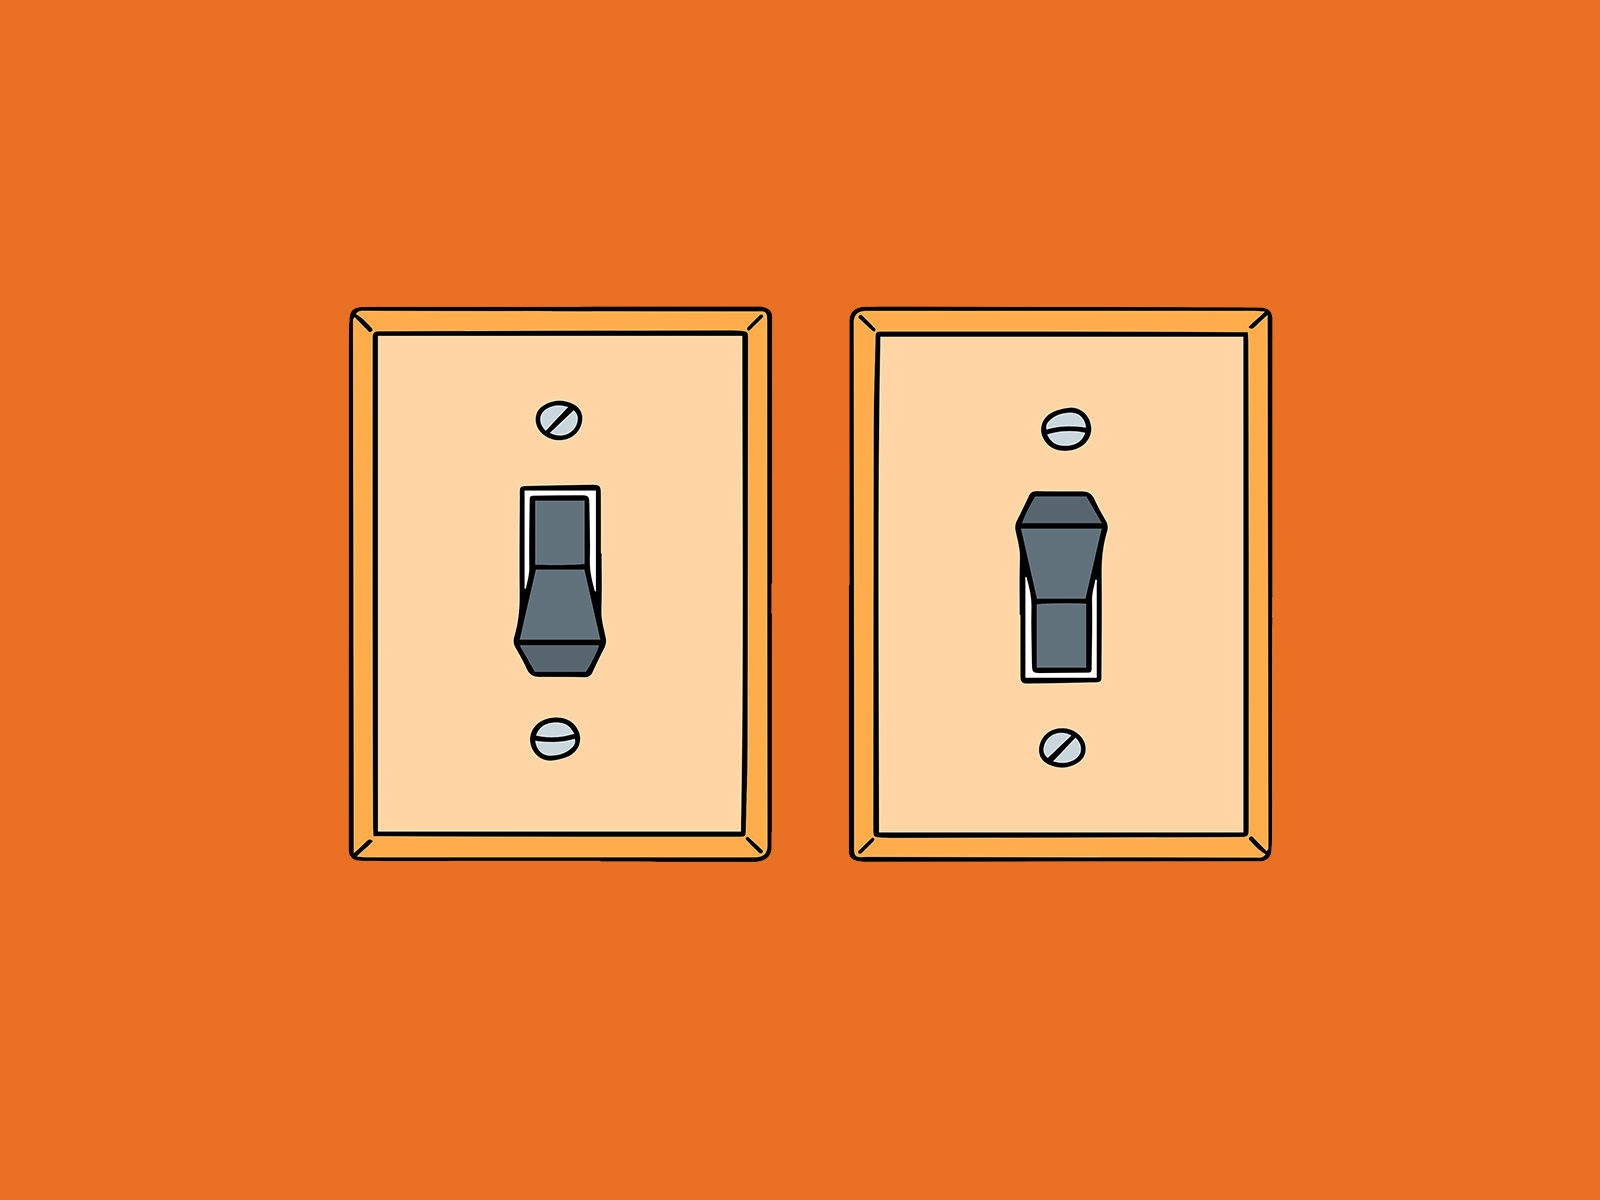 Une illustration de deux interrupteurs, un allumé et un éteint.